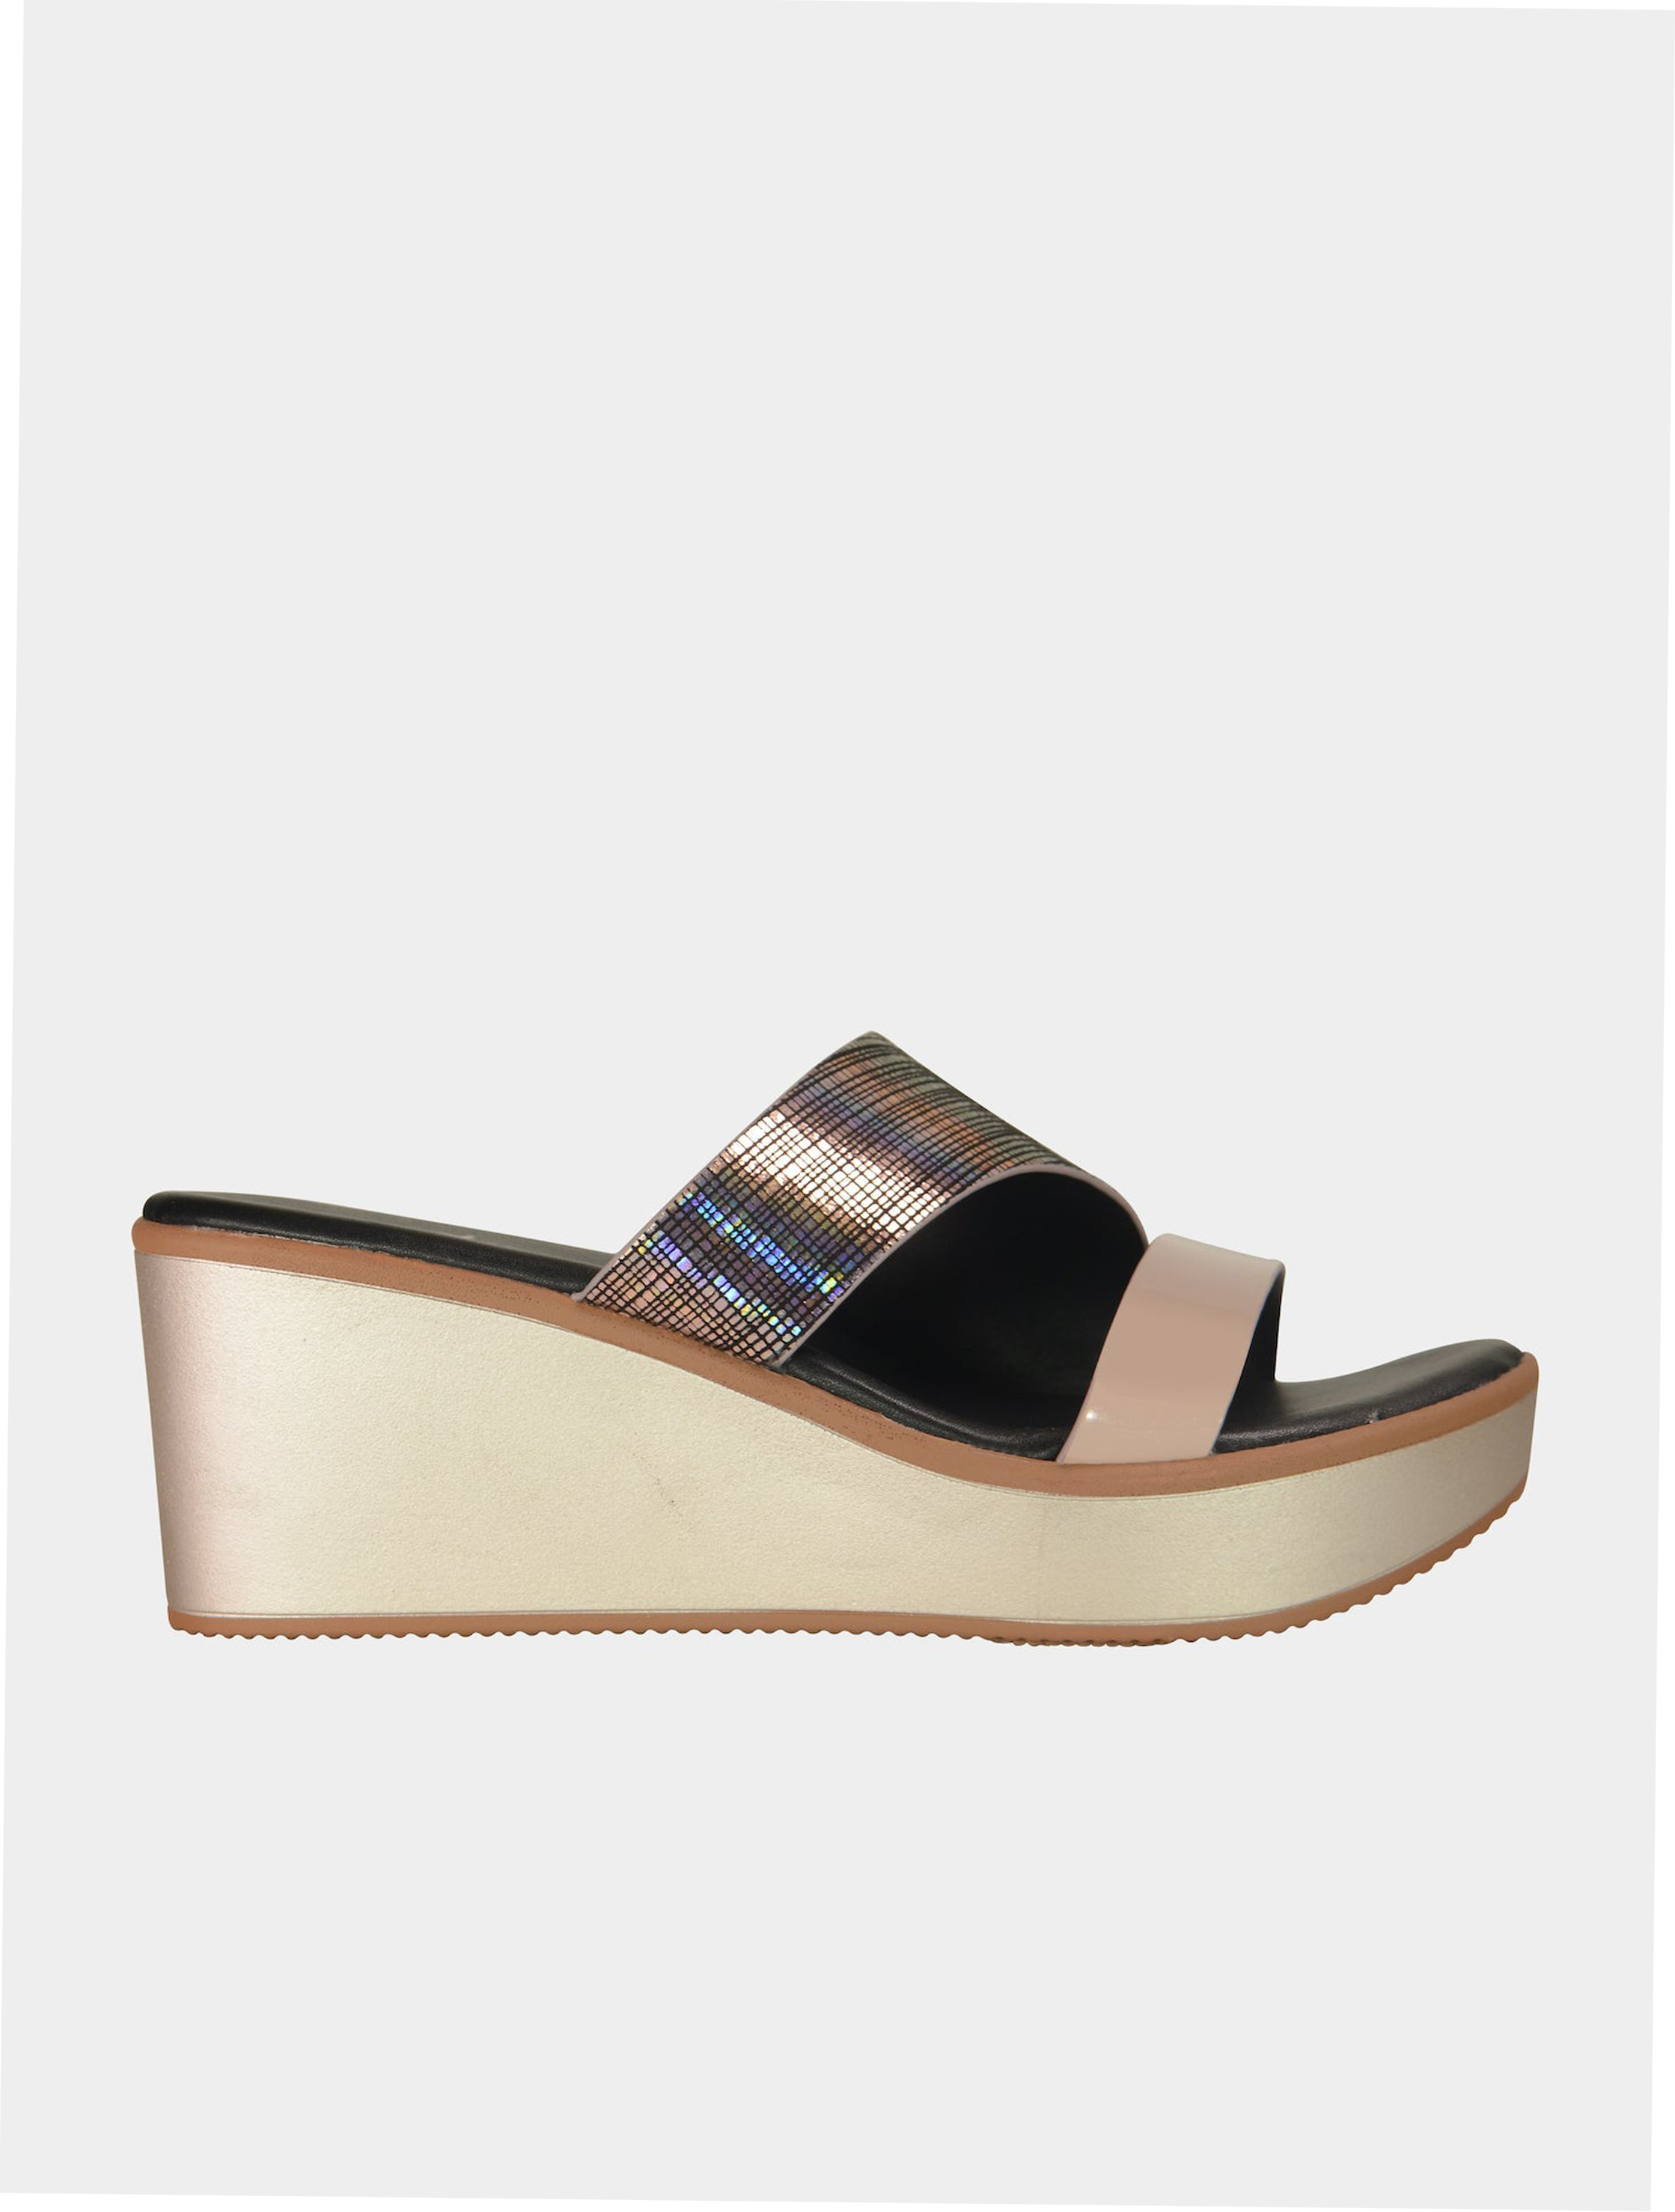 Michelle Morgan 914RJ28B Women's Wedge Sandals #color_Gold